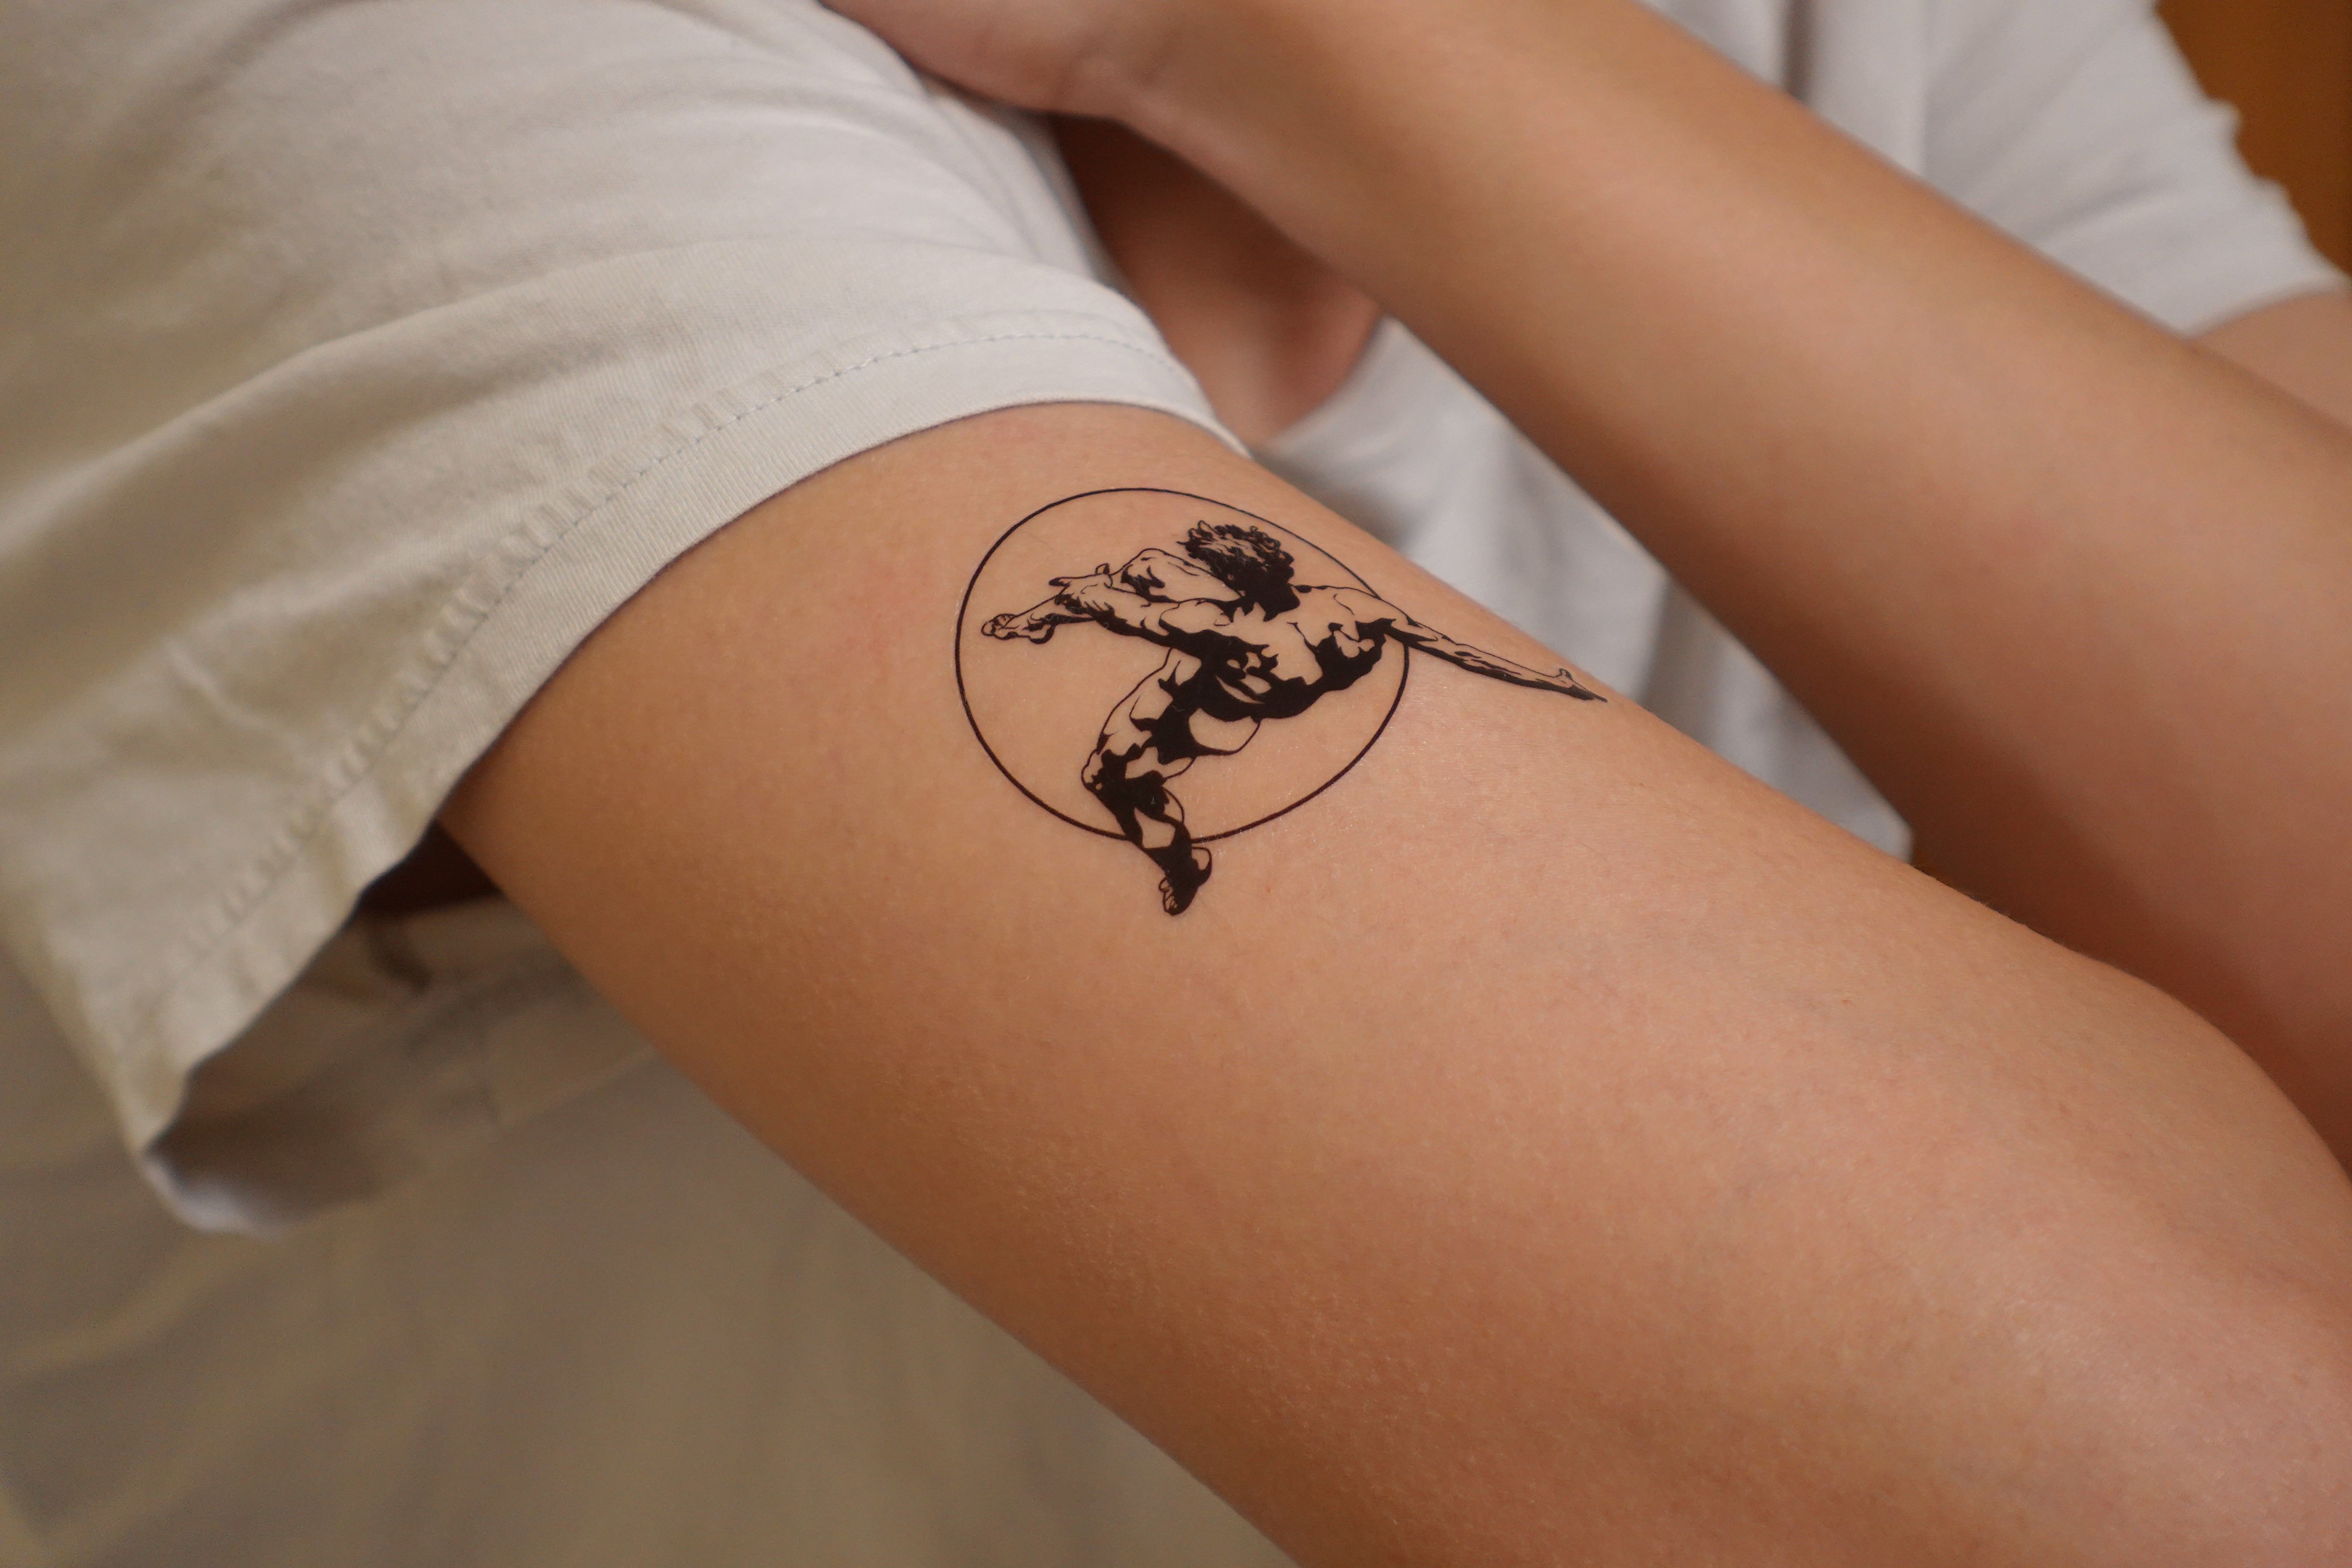 Icarus tattoo | Icarus tattoo, Mens body tattoos, Greek tattoos